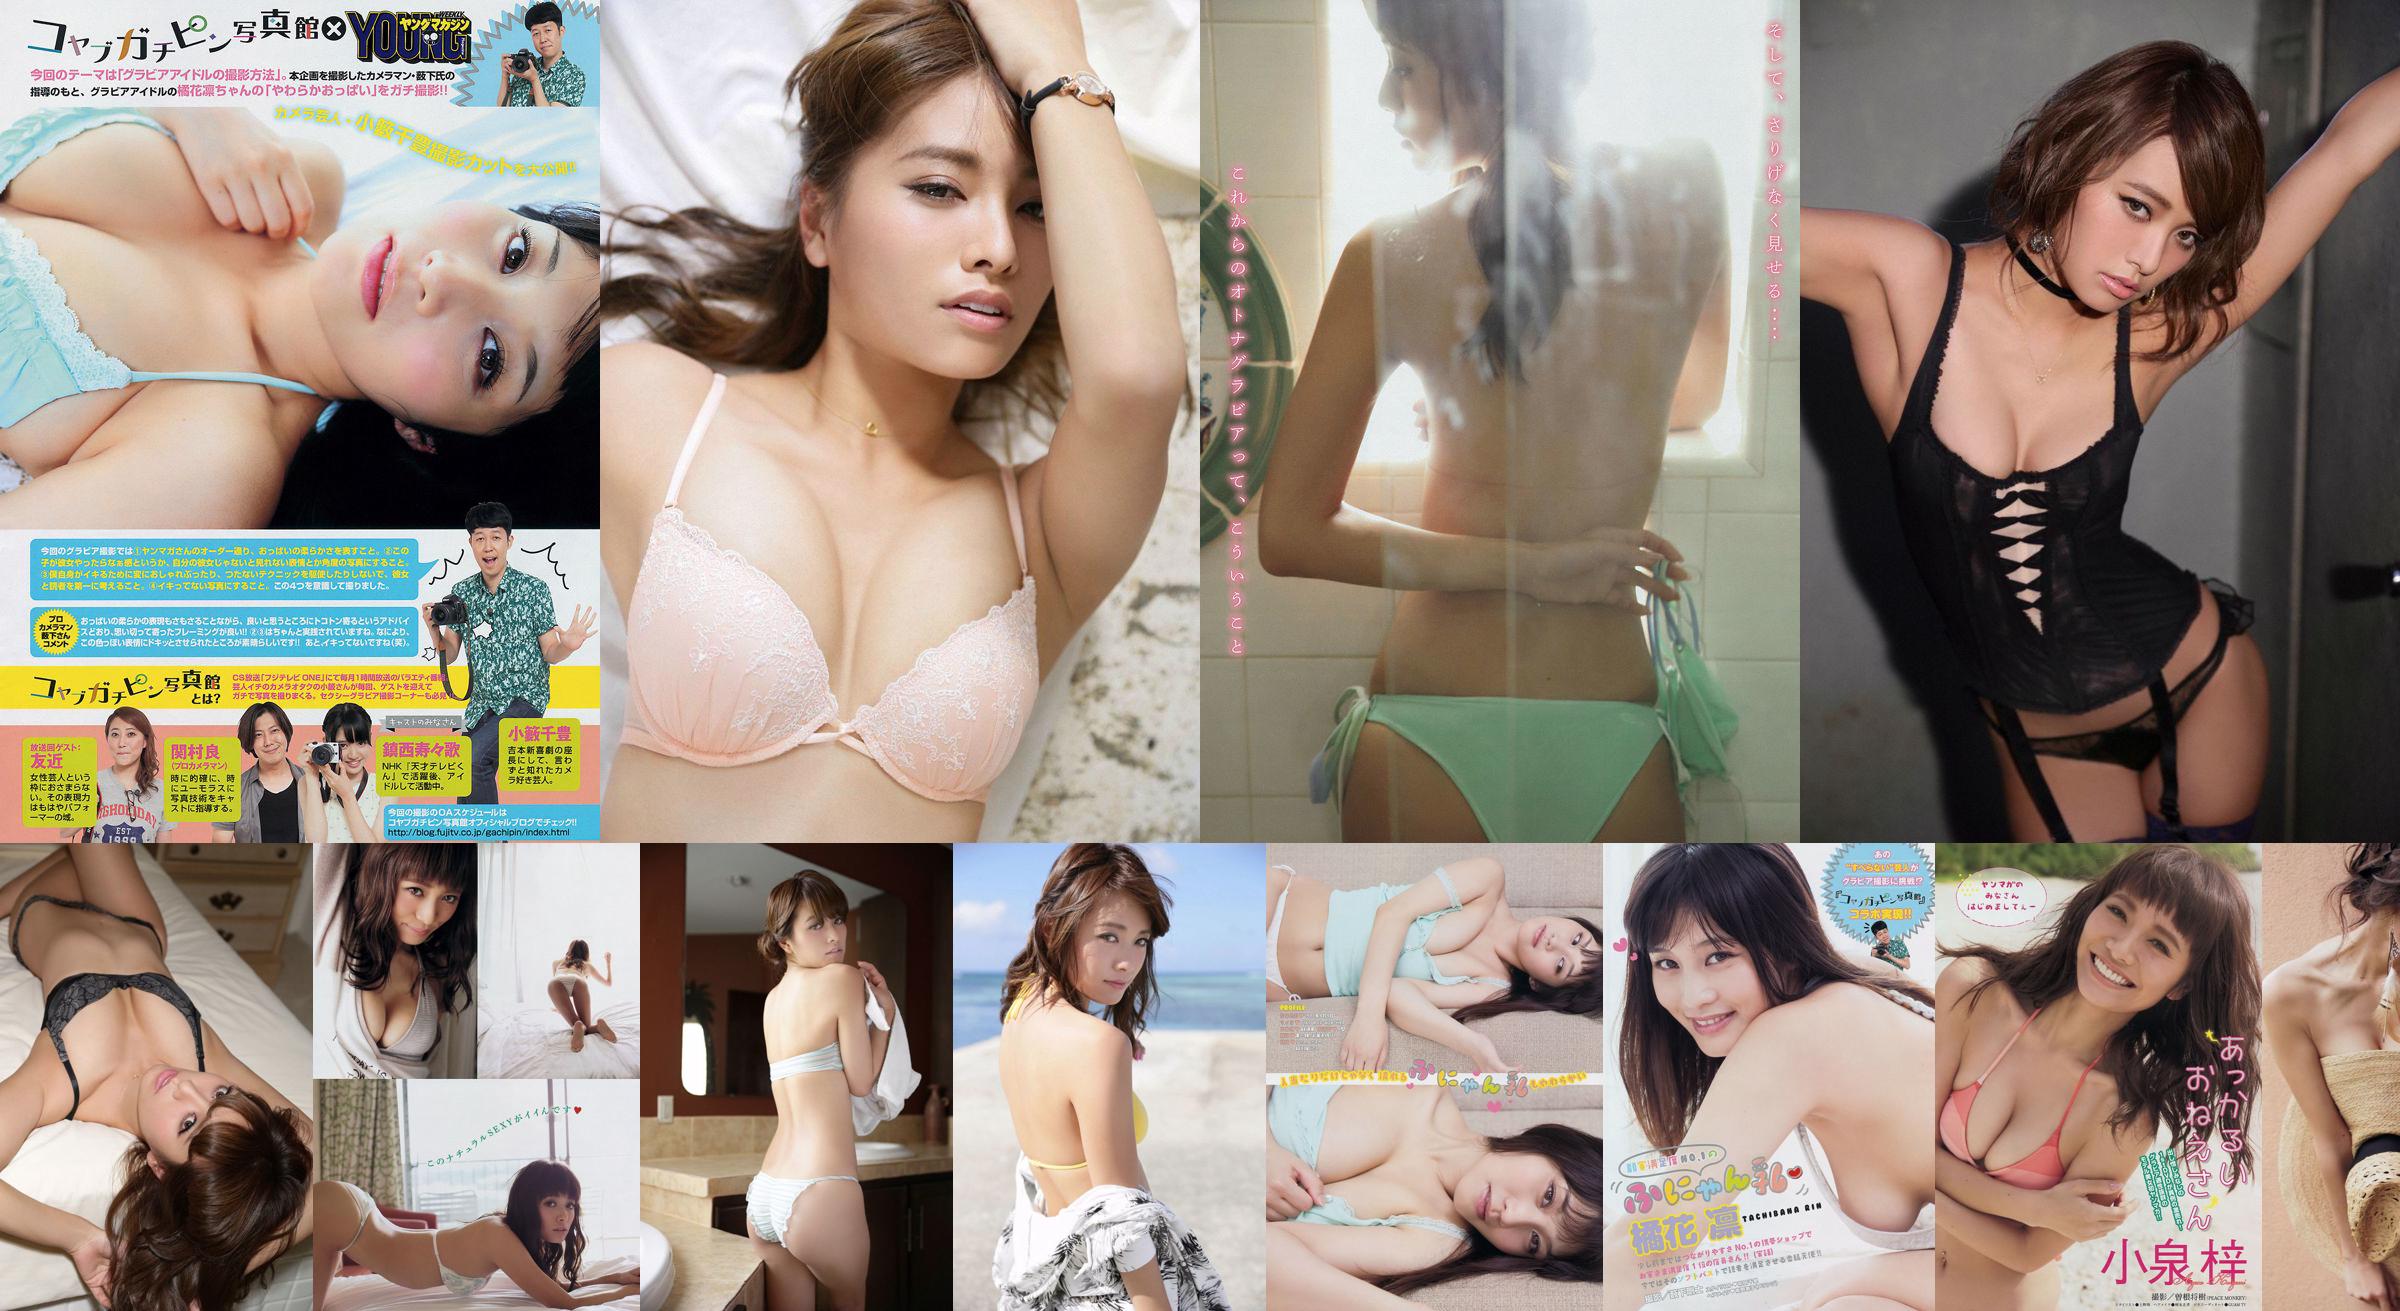 [Young Magazine] Azusa Koizumi Tachibana Rin 2014 Magazine photo n ° 43 No.67d683 Page 1